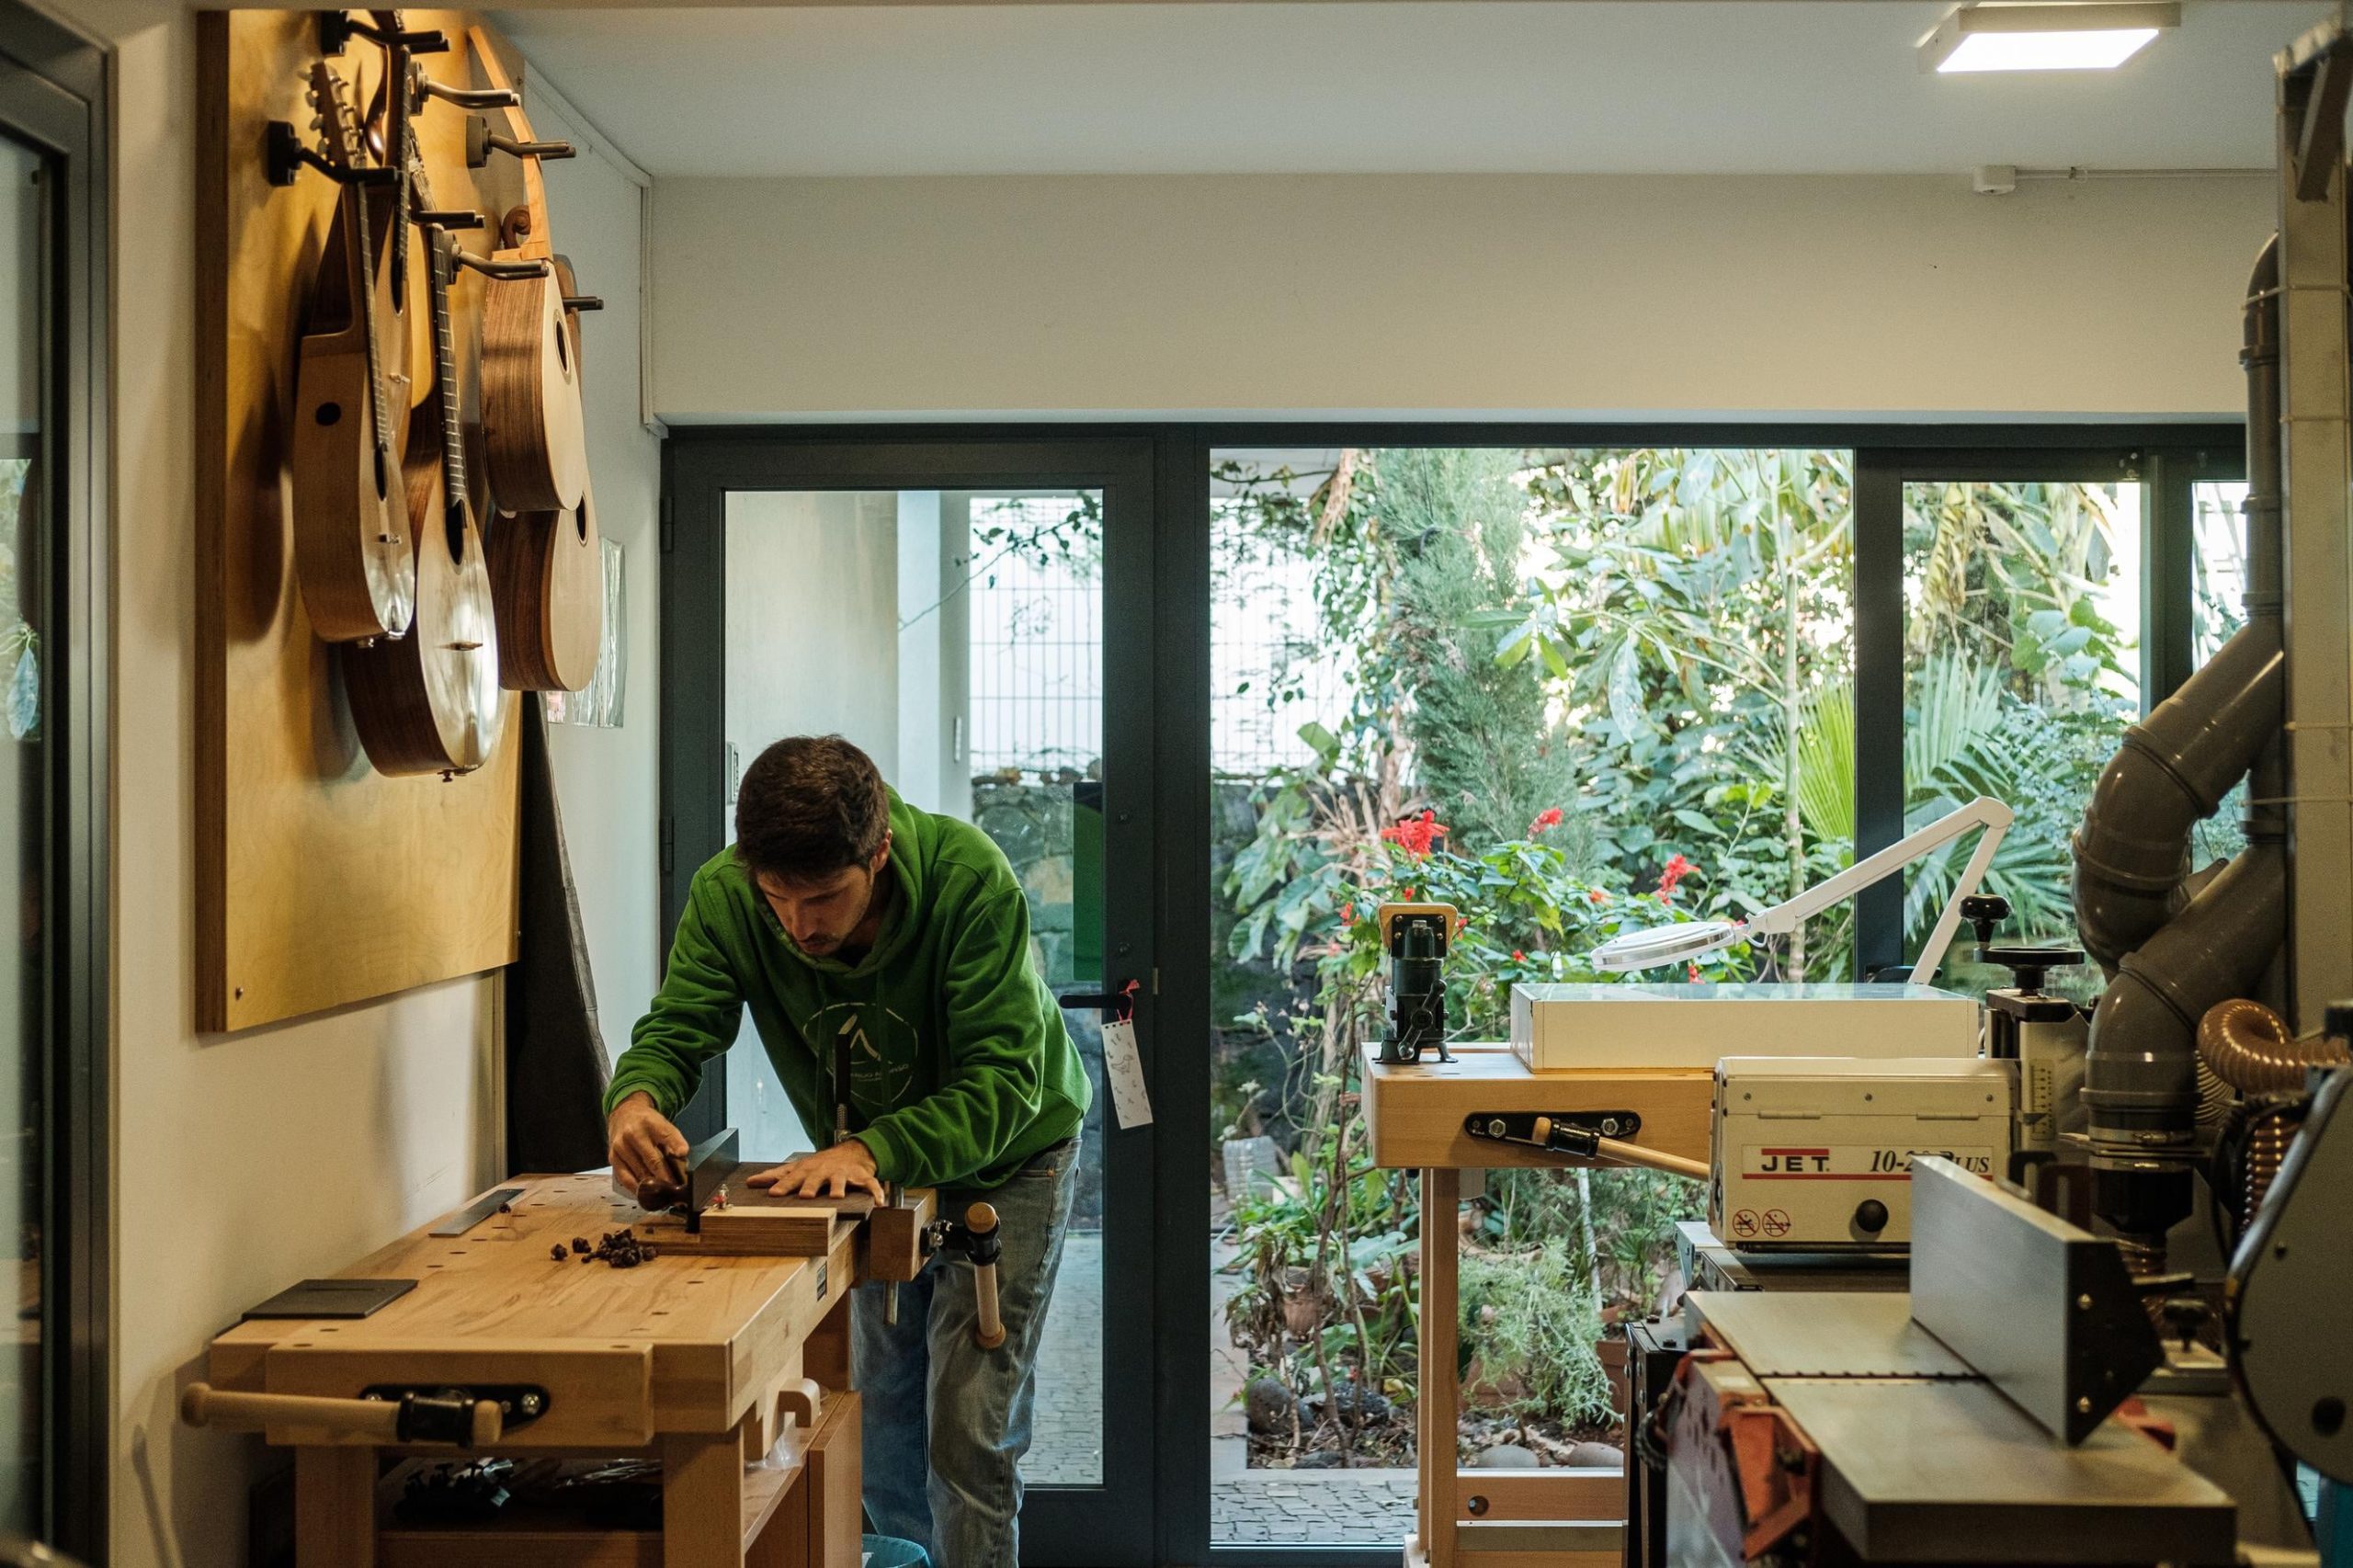 Artista Leonardo Afonso a trabalhar na sua oficina. Guitarras penduradas na parede do lado esquerdo e maquinaria do lado direito